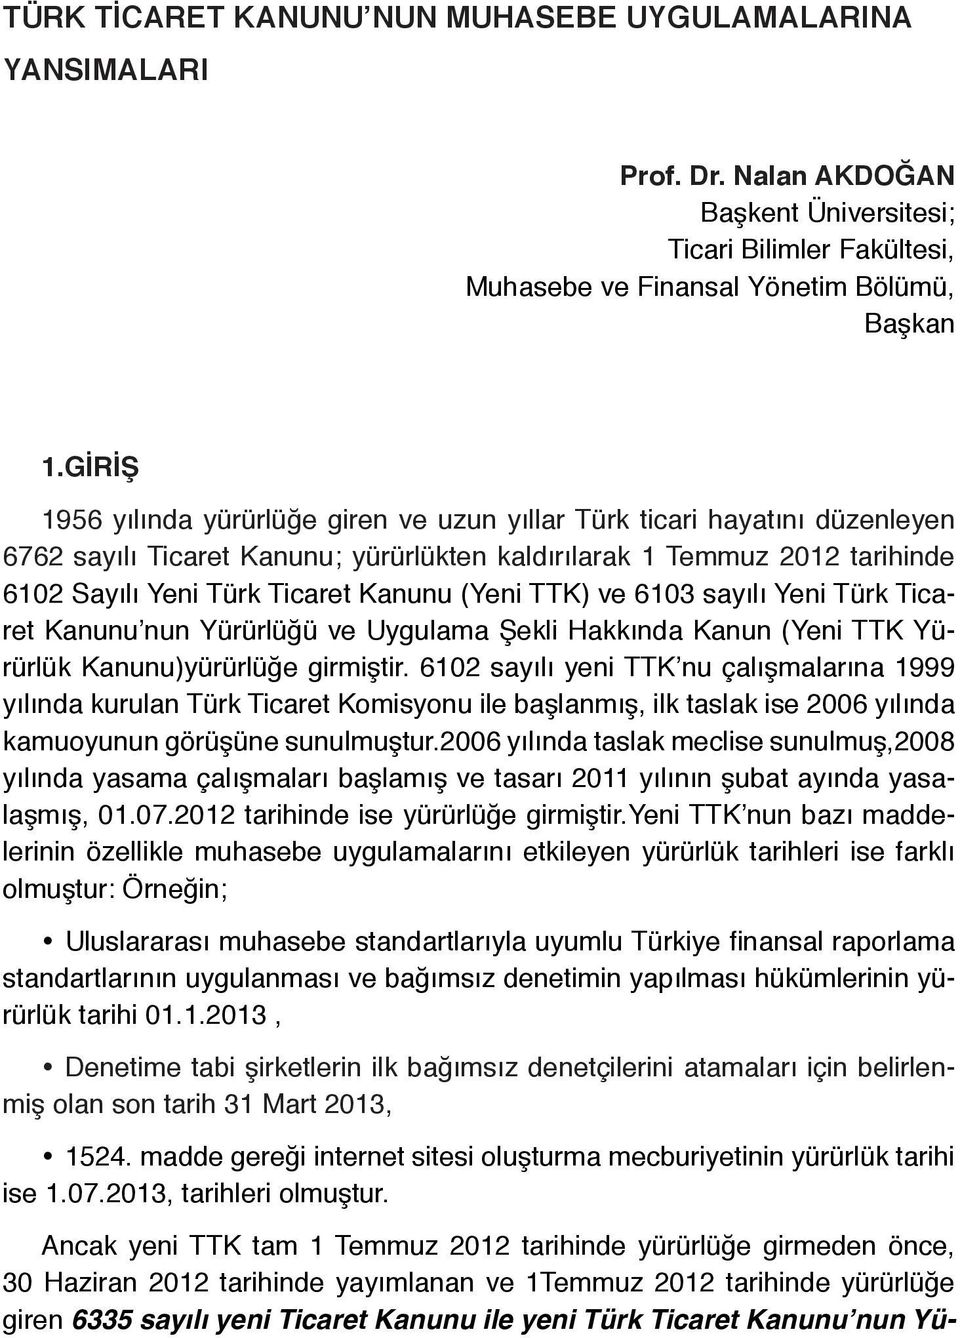 GİRİŞ 1956 yılında yürürlüğe giren ve uzun yıllar Türk ticari hayatını düzenleyen 6762 sayılı Ticaret Kanunu; yürürlükten kaldırılarak 1 Temmuz 2012 tarihinde 6102 Sayılı Yeni Türk Ticaret Kanunu